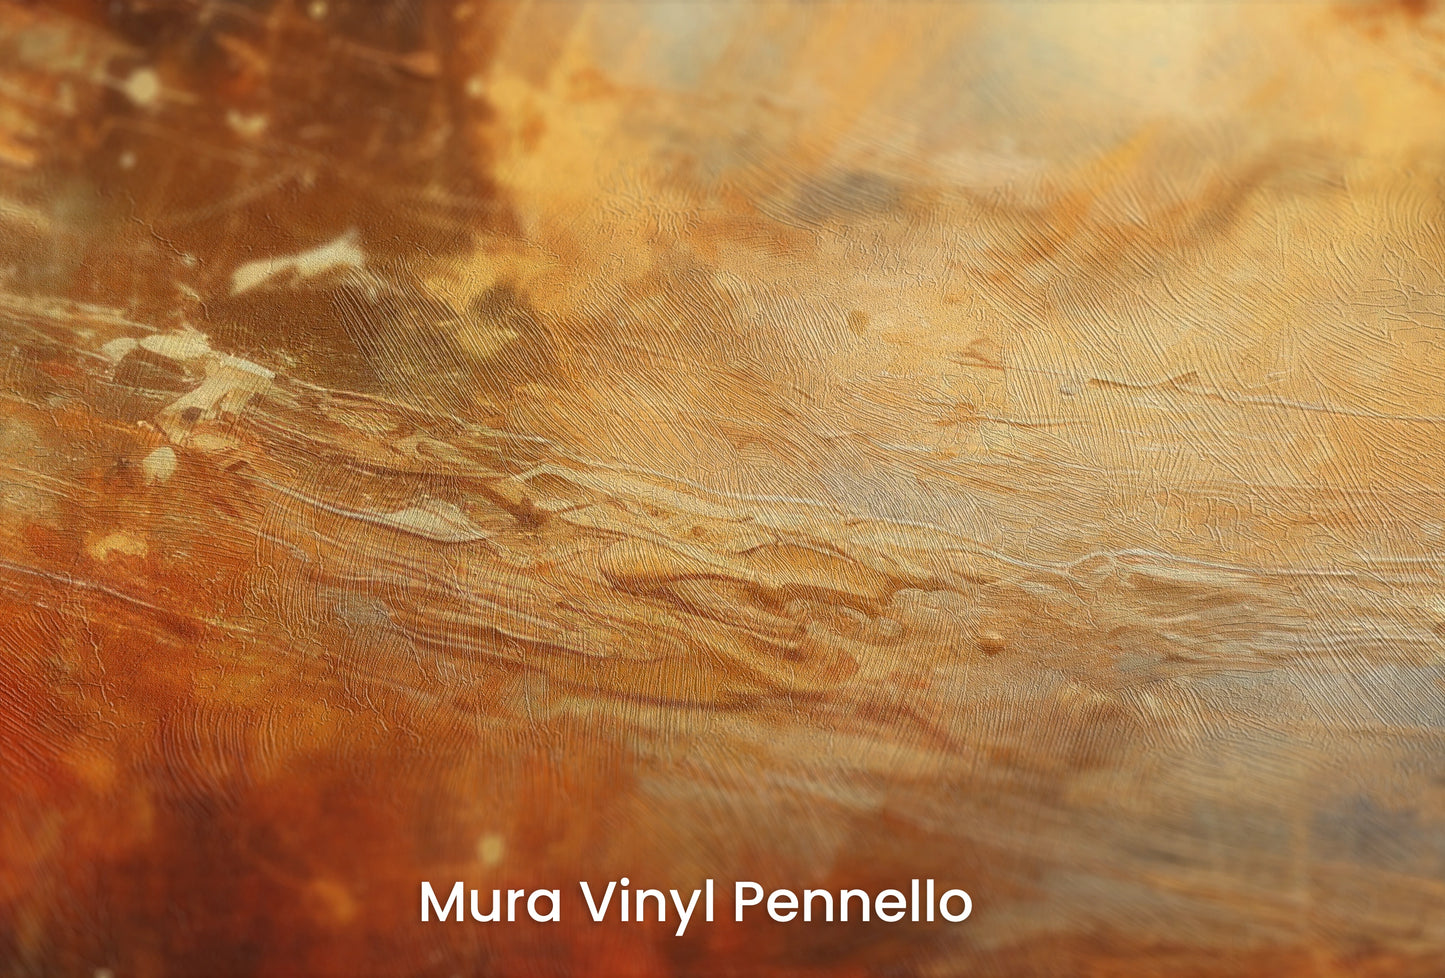 Zbliżenie na artystyczną fototapetę o nazwie Saturn's Embrace na podłożu Mura Vinyl Pennello - faktura pociągnięć pędzla malarskiego.